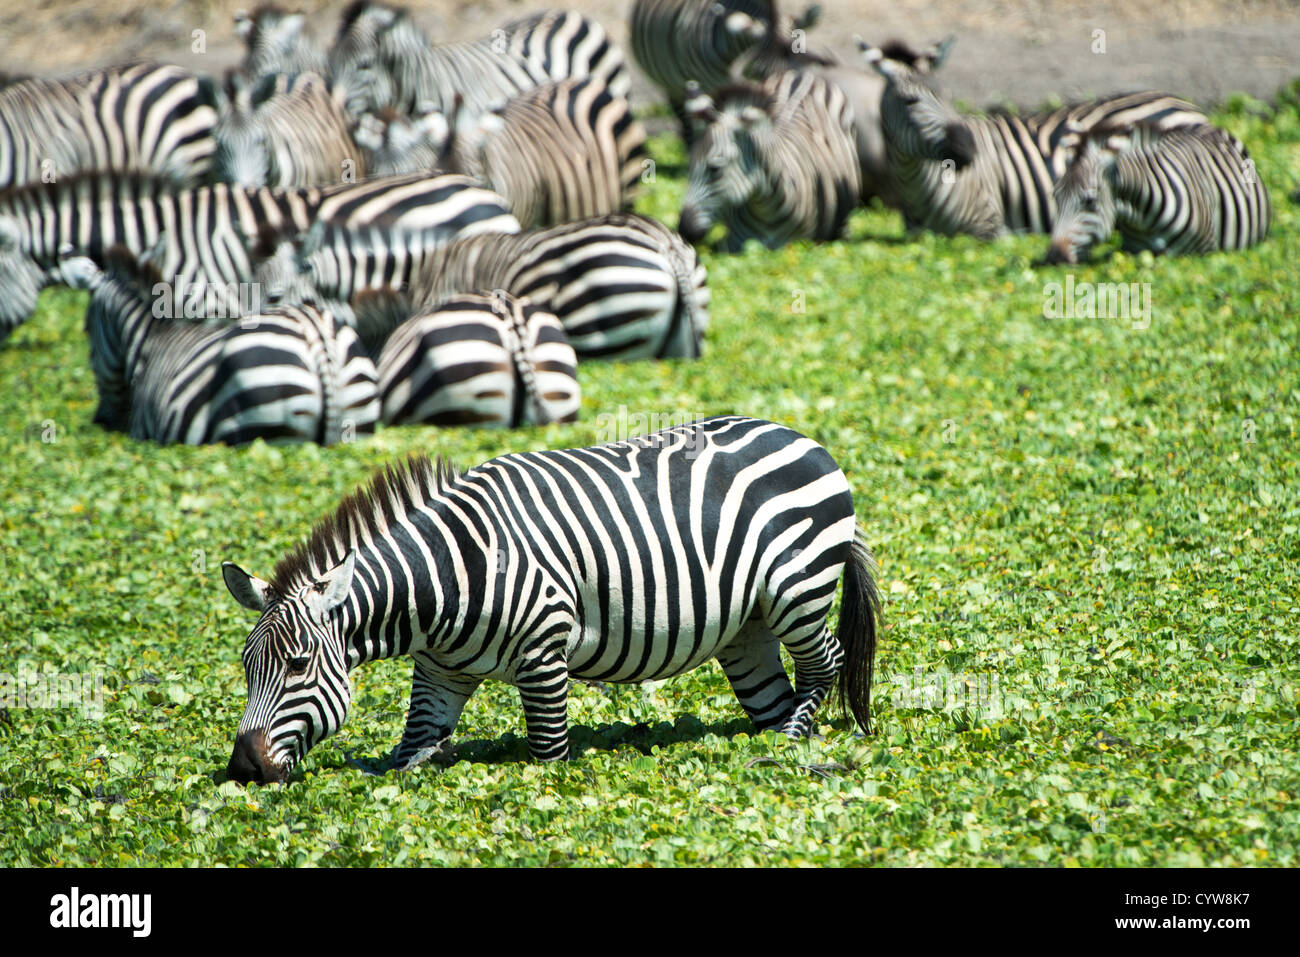 Der Tarangire National Park, Tansania - eine herde Zebras im Wasser eines kleinen Reed gedeckten See in der Tarangire National Park im Norden von Tansania, nicht weit von den Ngorongoro Krater und die Serengeti. Stockfoto